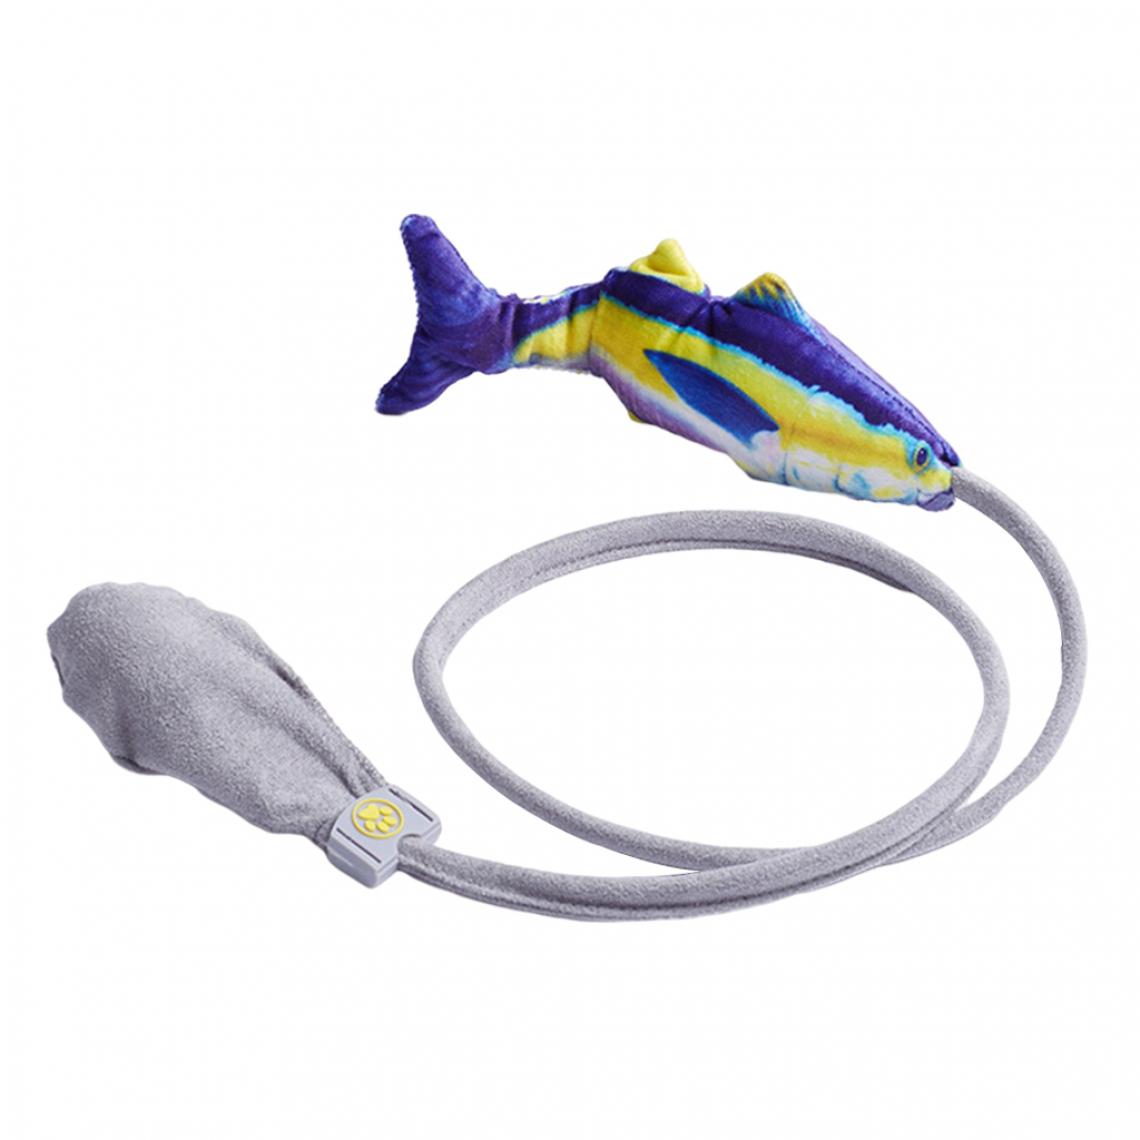 marque generique - Flopping Fish Dancing Toy Cataire Interactif Jouant Chat Jouet Chien Queue - Jouet pour chien